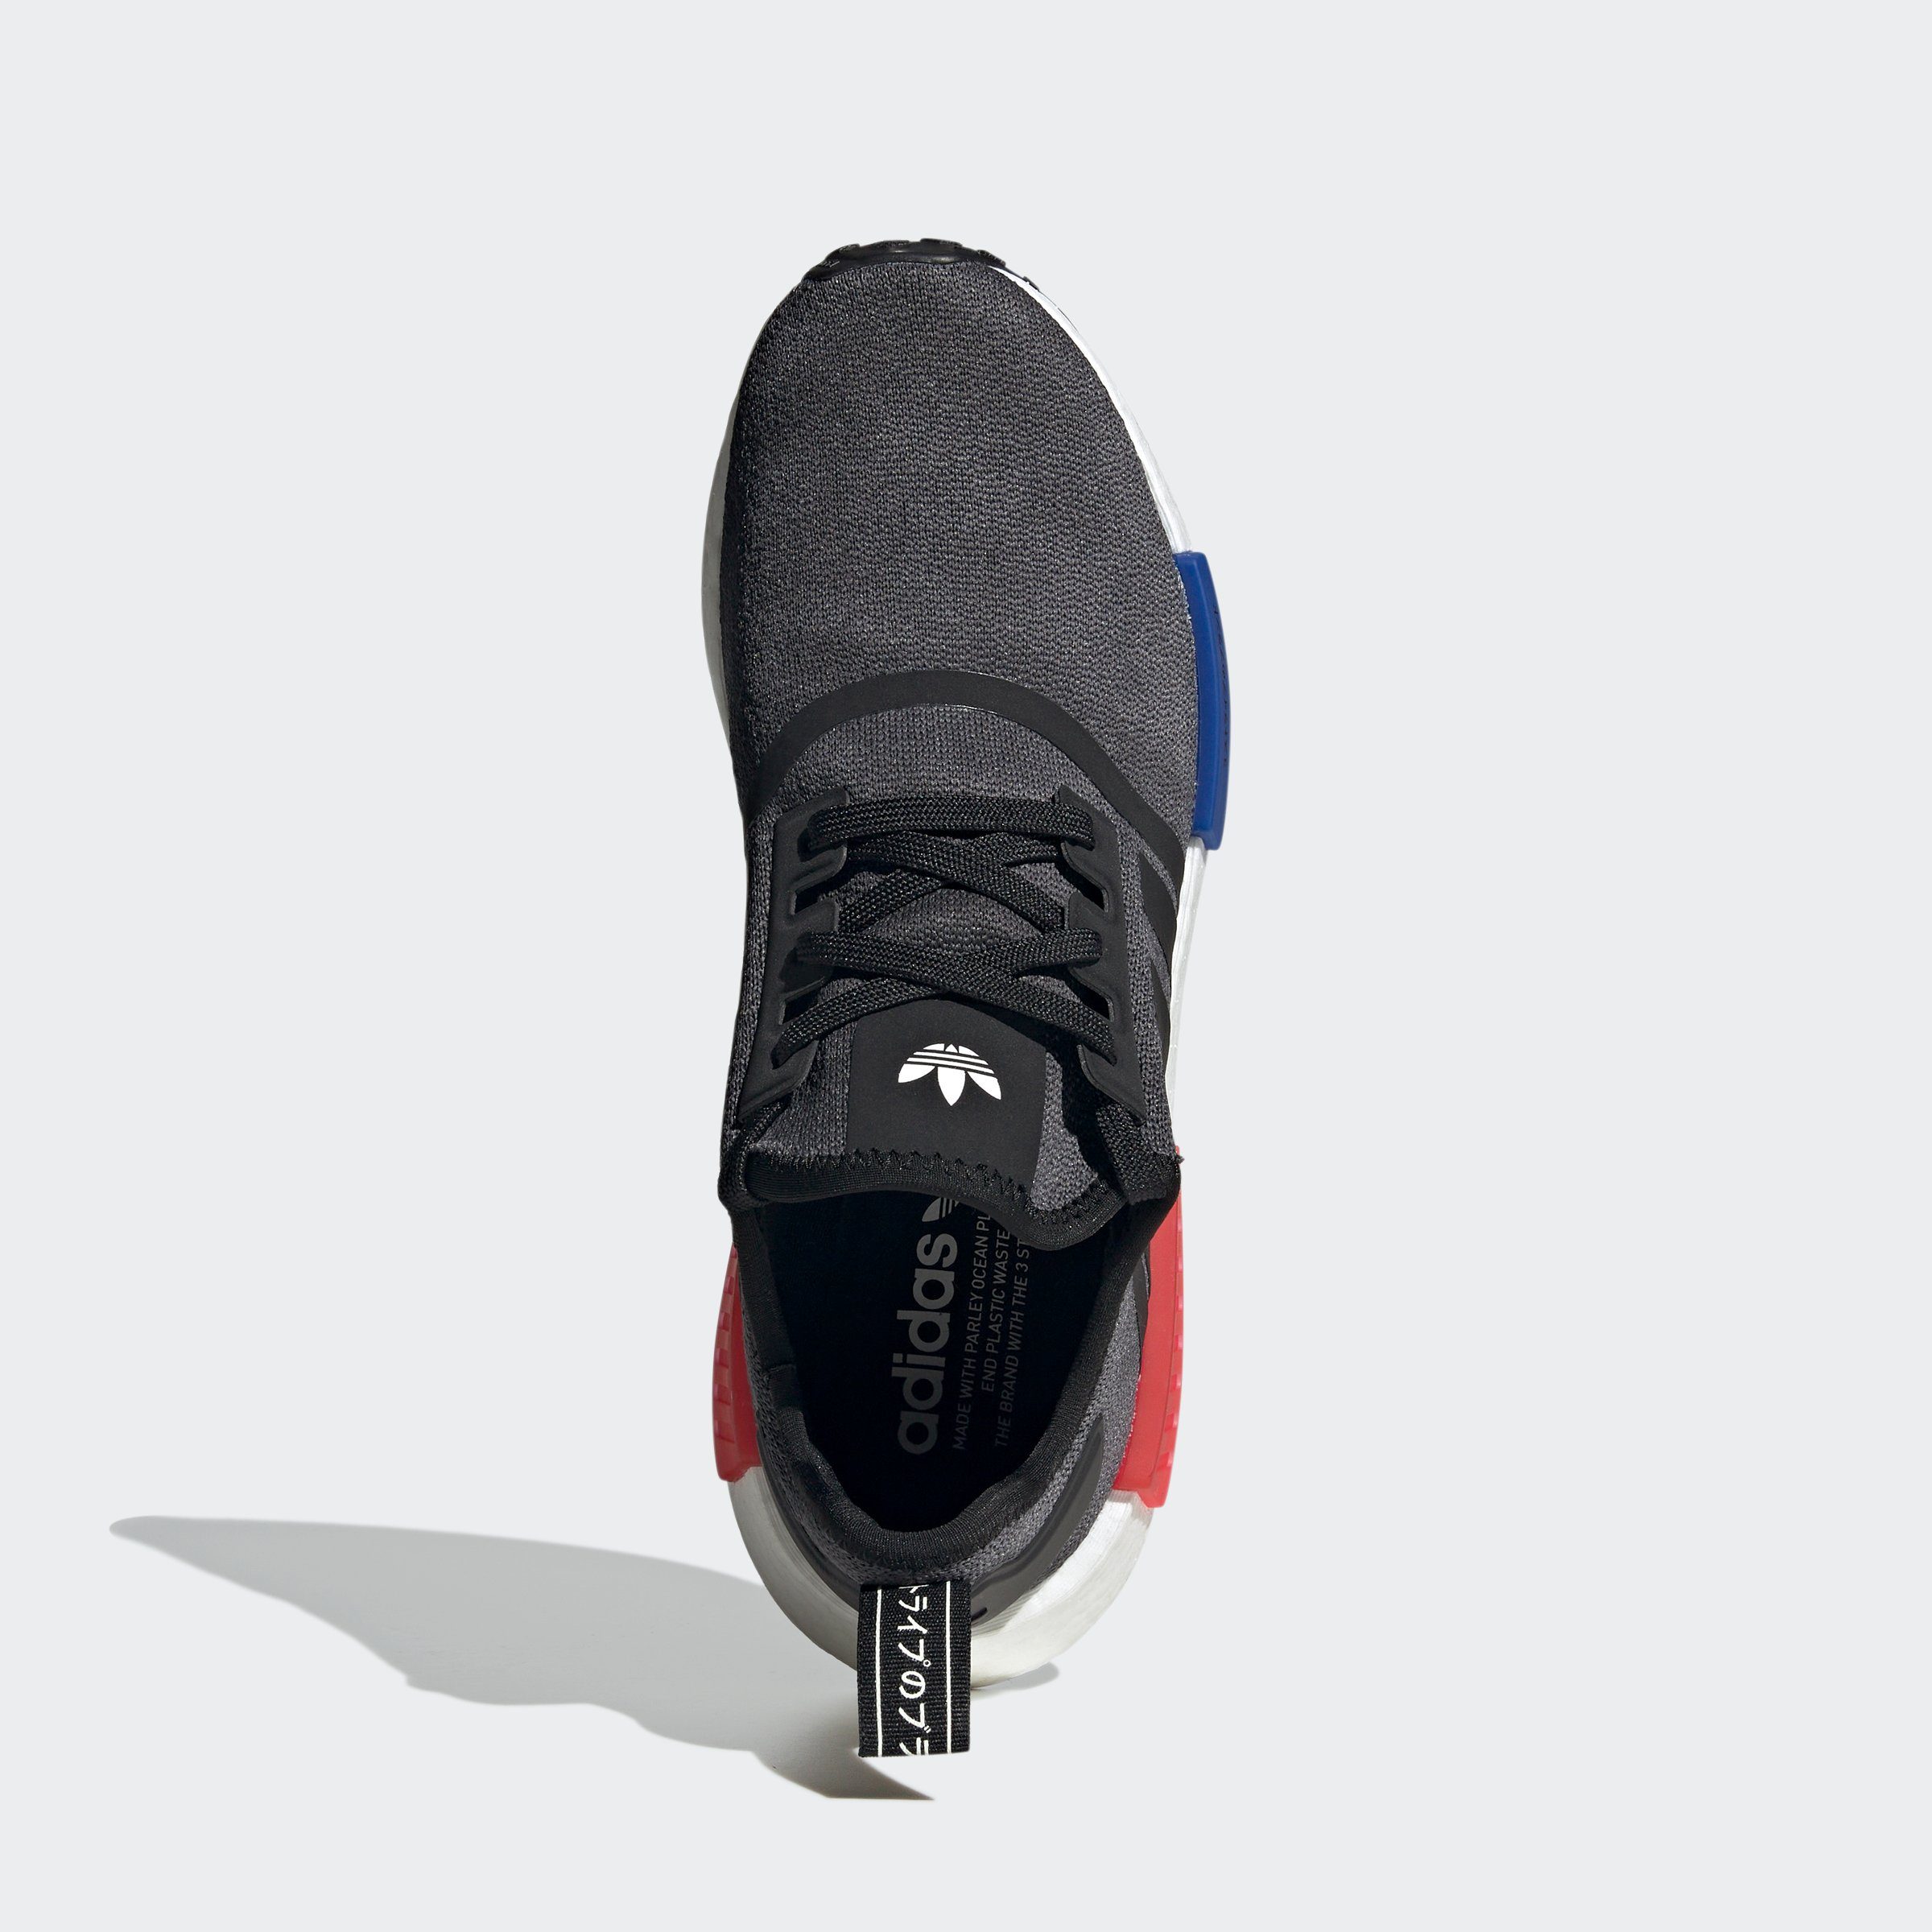 Originals Sneaker CBLACK/SELUBL/GLORED NMD_R1 adidas